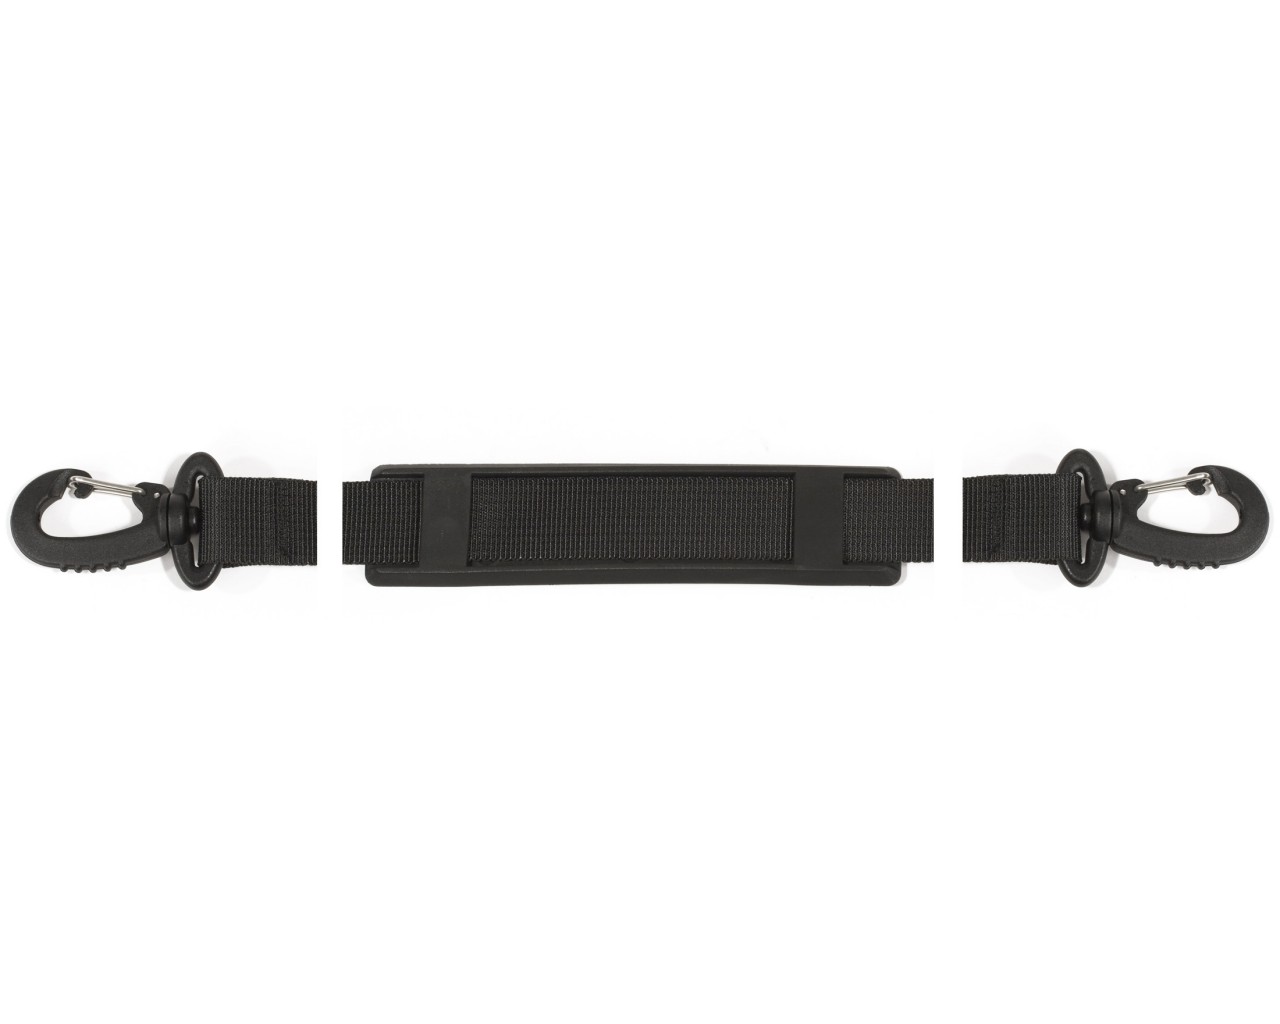 Ortlieb shoulder belt 150cm with snap hooks